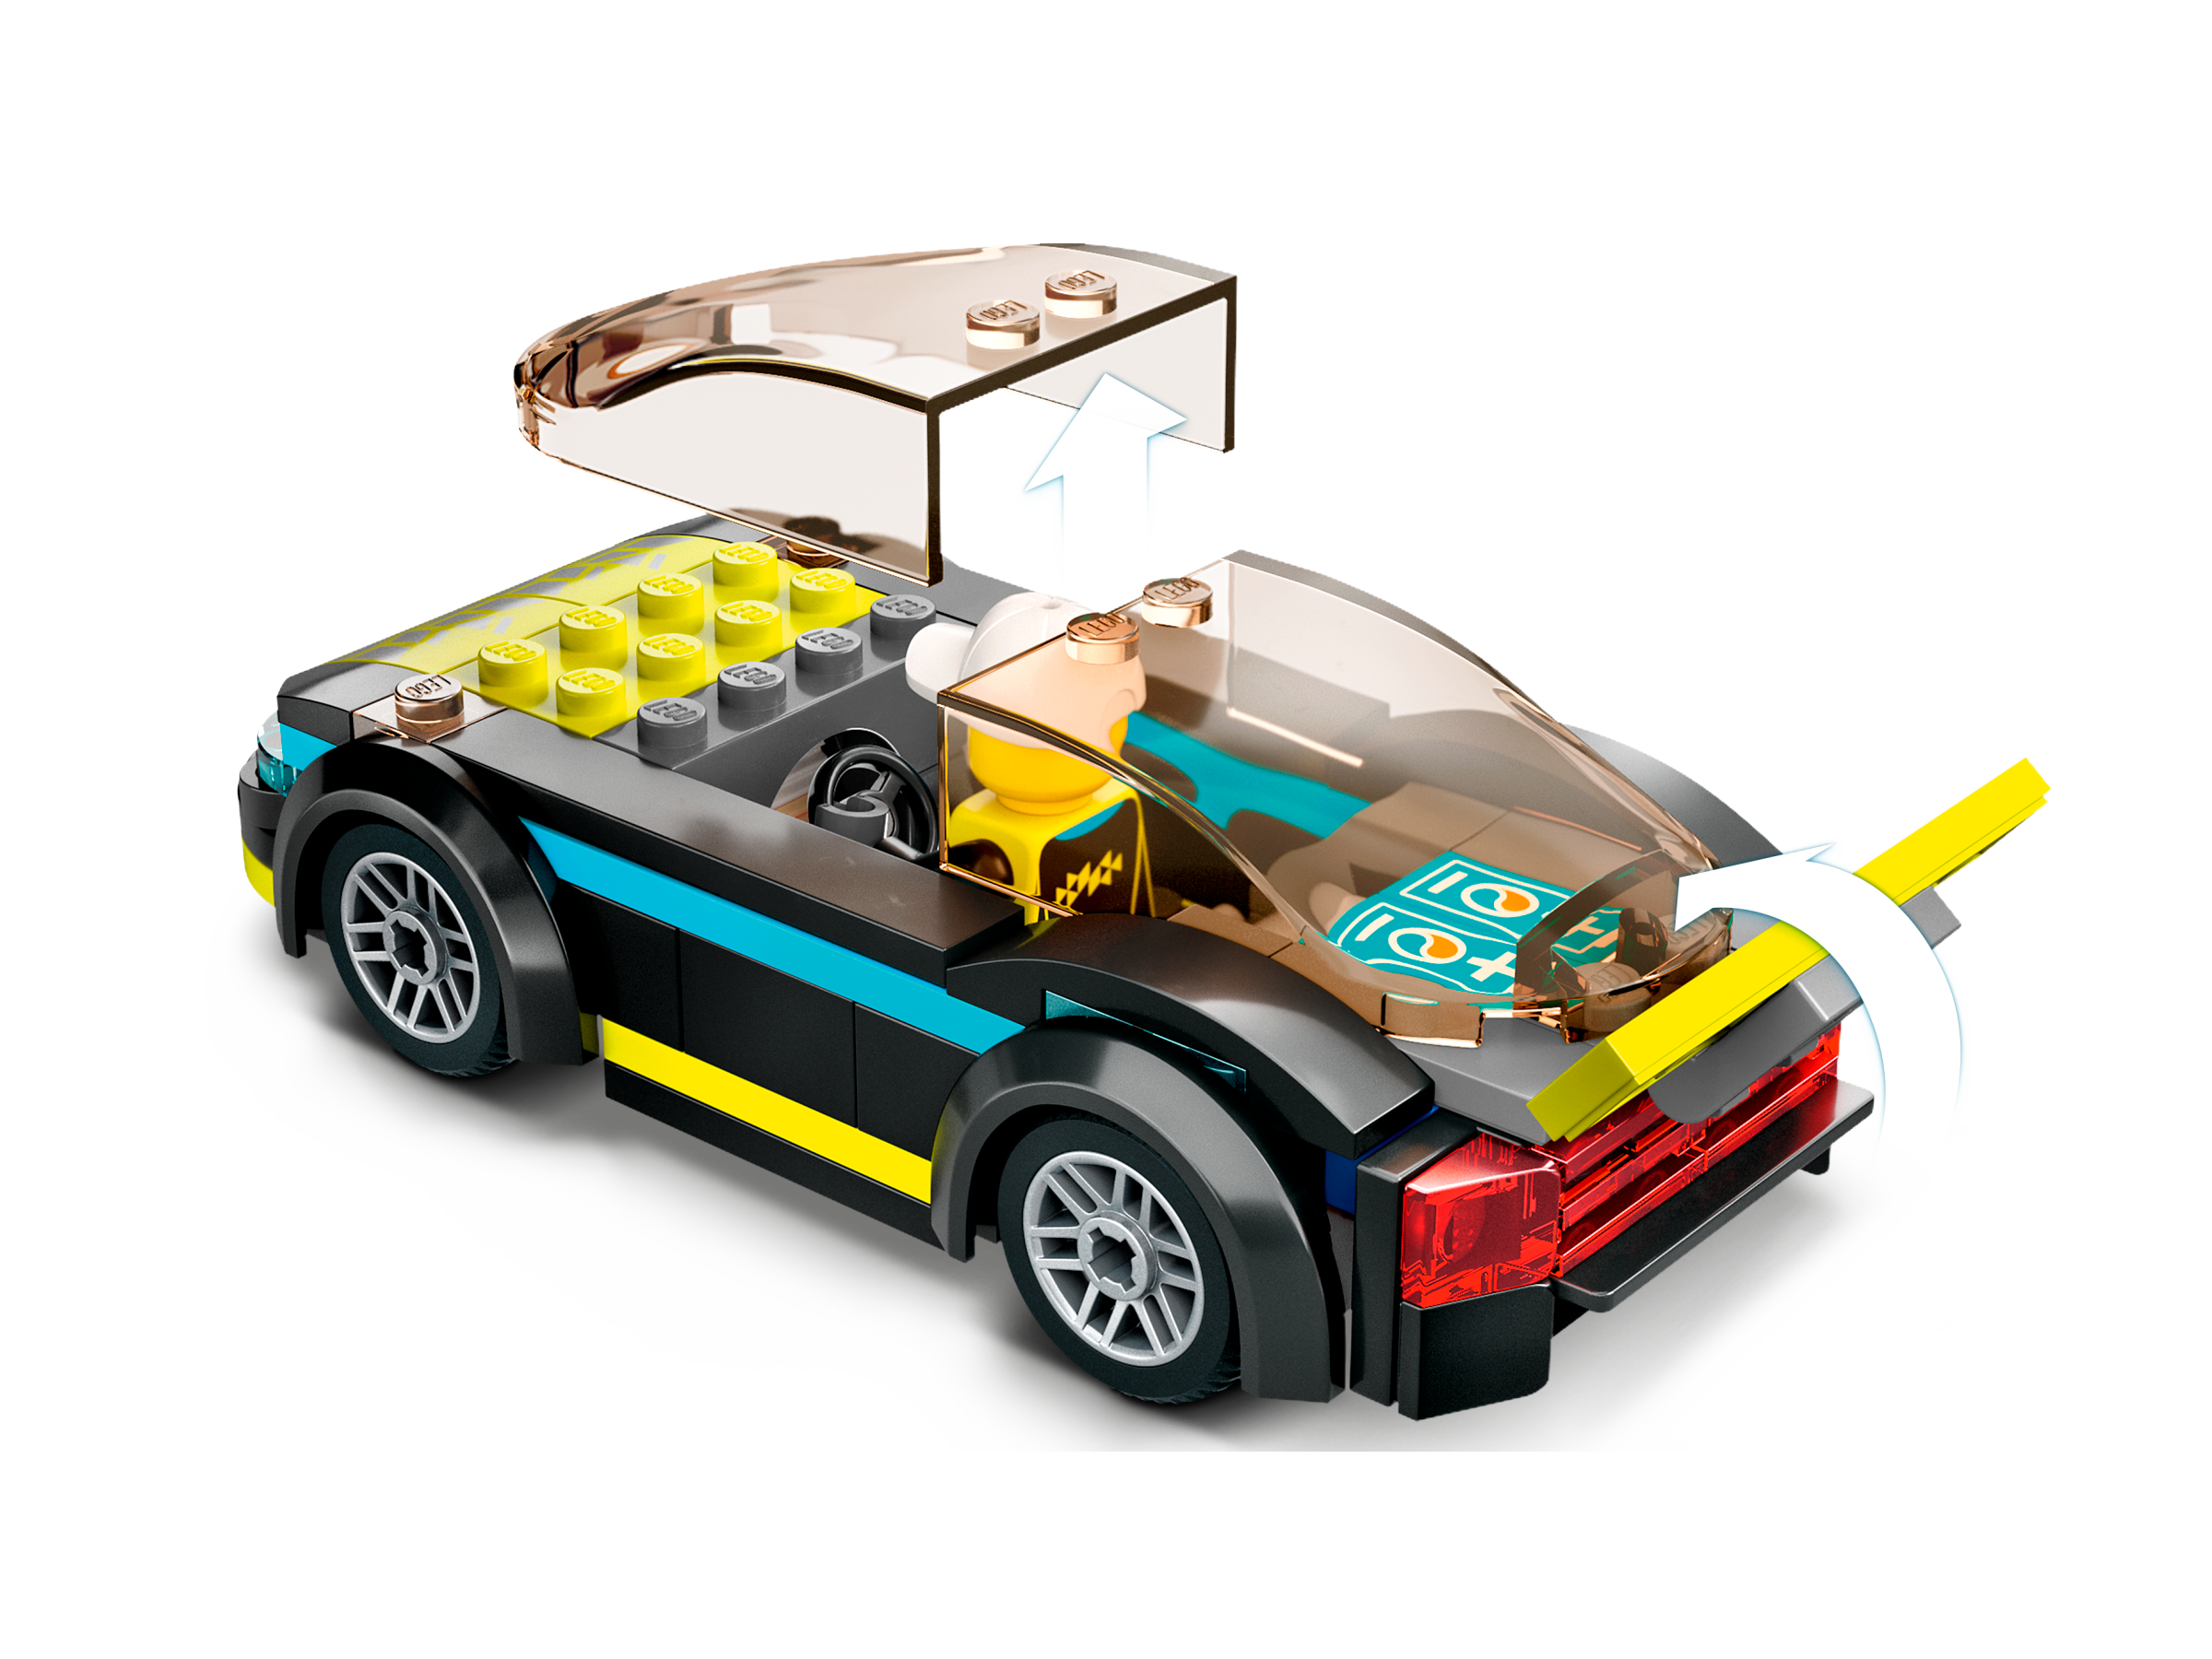 LEGO City Auto Sportiva Elettrica